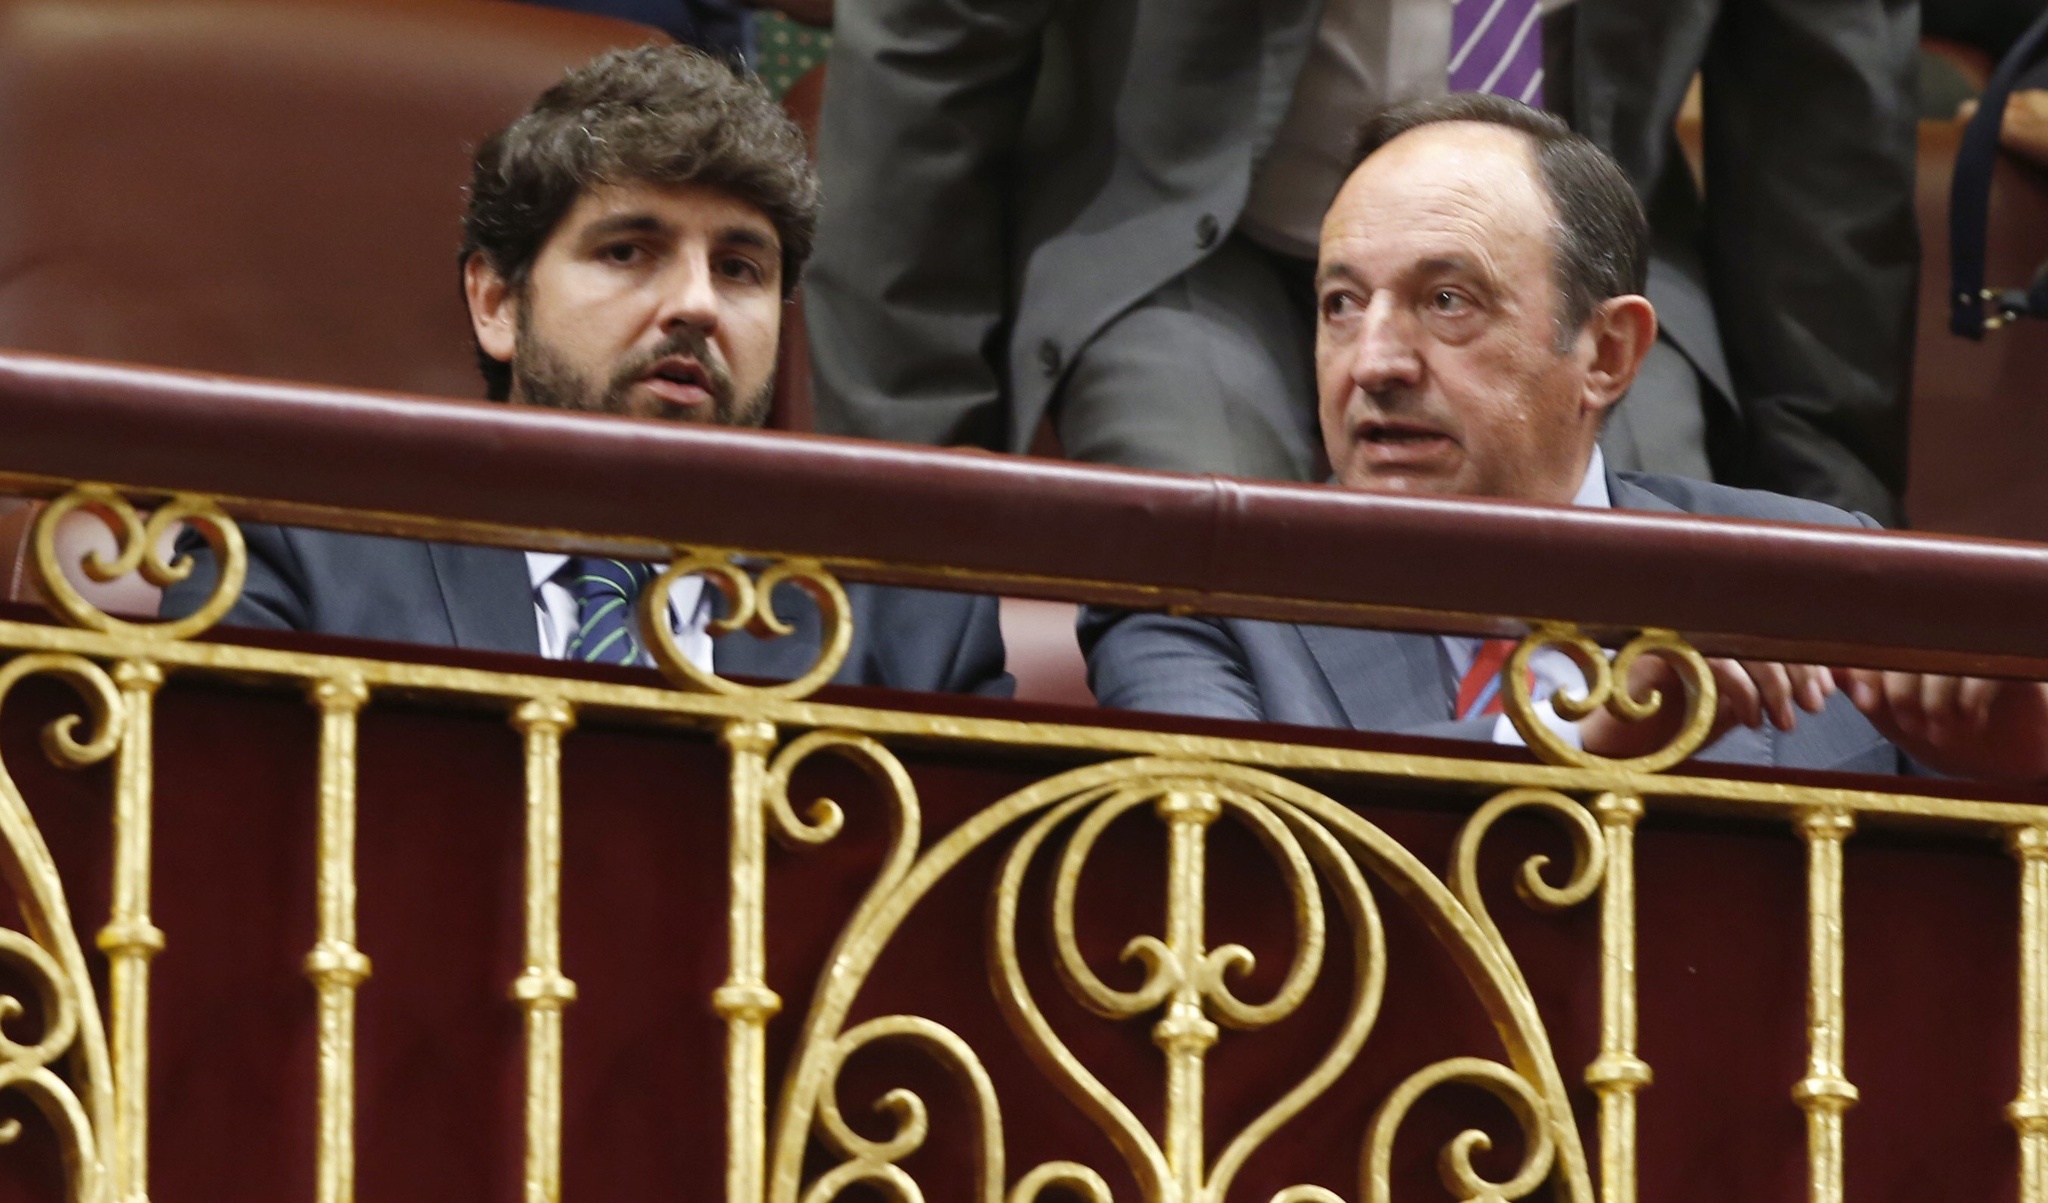 El jefe del Ejecutivo regional, Fernando López Miras, en la sesión de la Cámara baja en la que el presidente del Gobierno de España, Mariano Rajoy, informó sobre lo sucedido en Cataluña